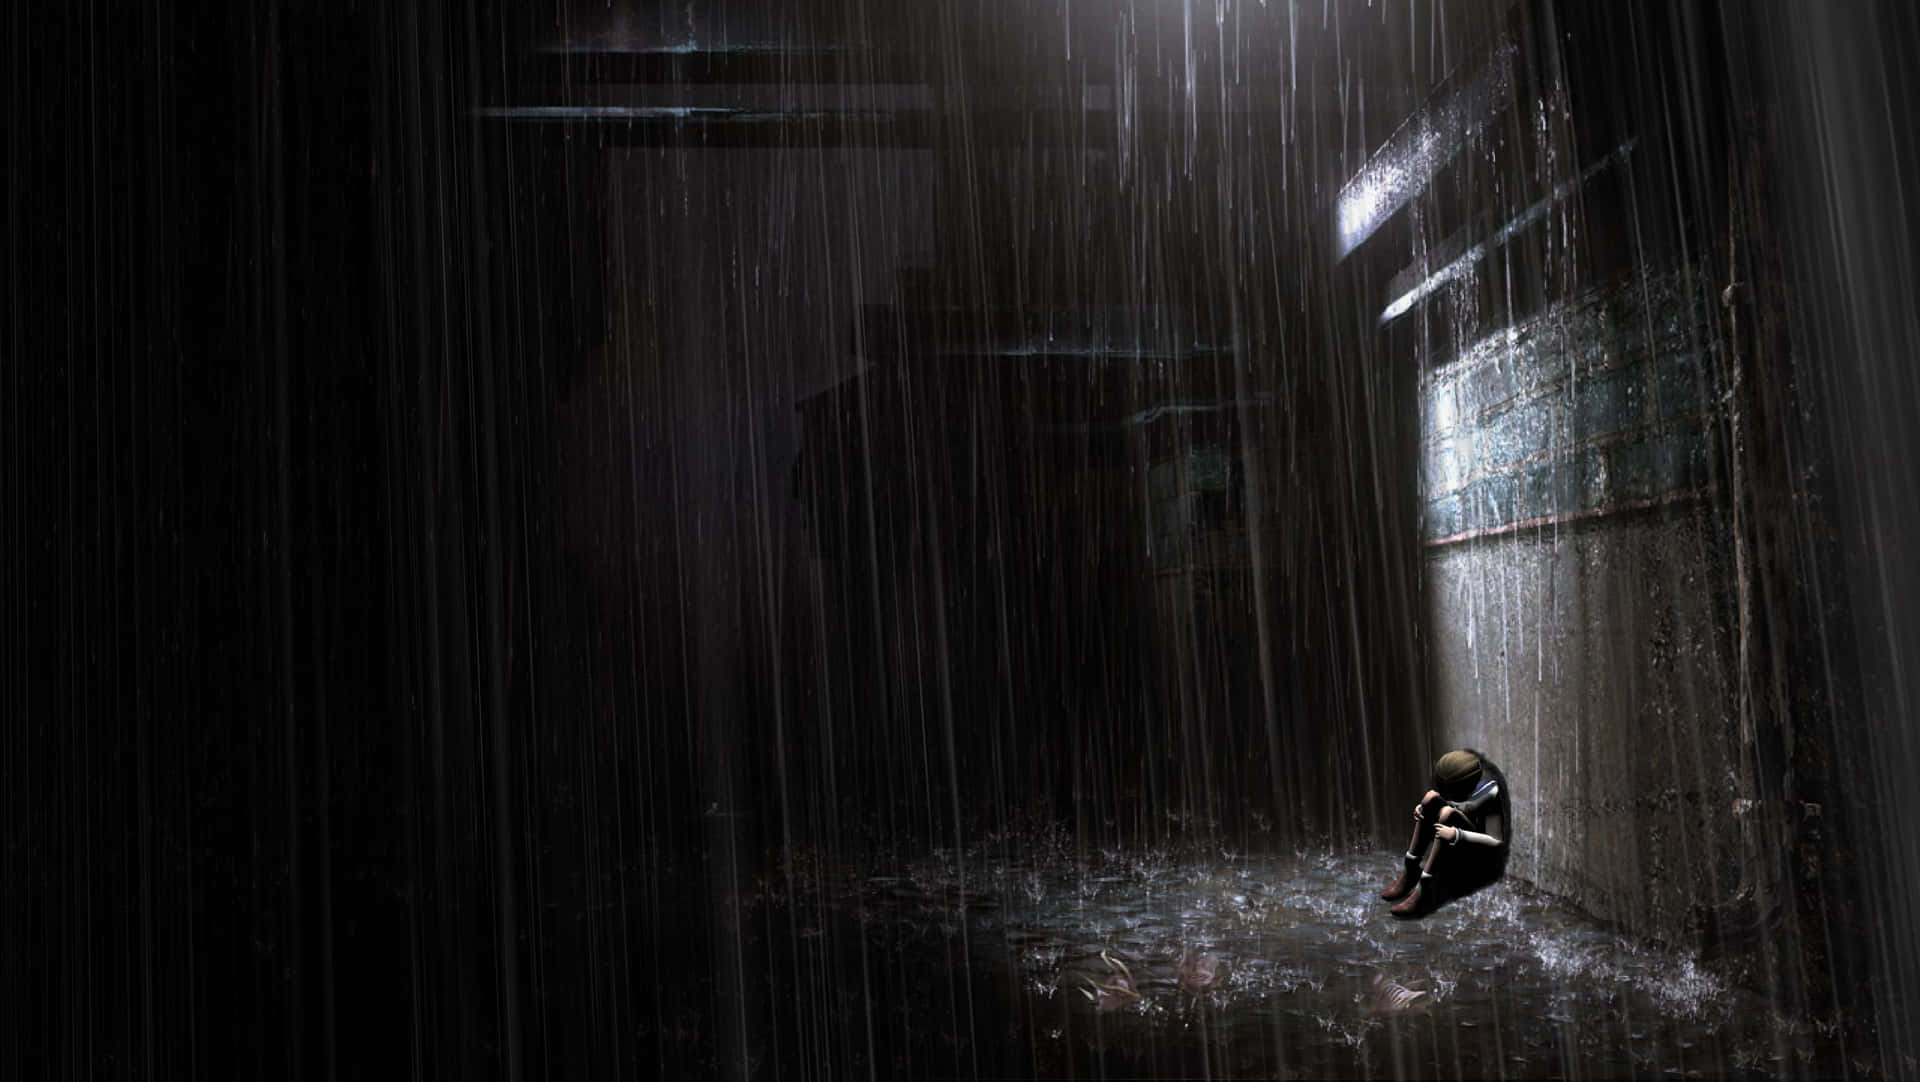 Solitary Person Under Rain Wallpaper